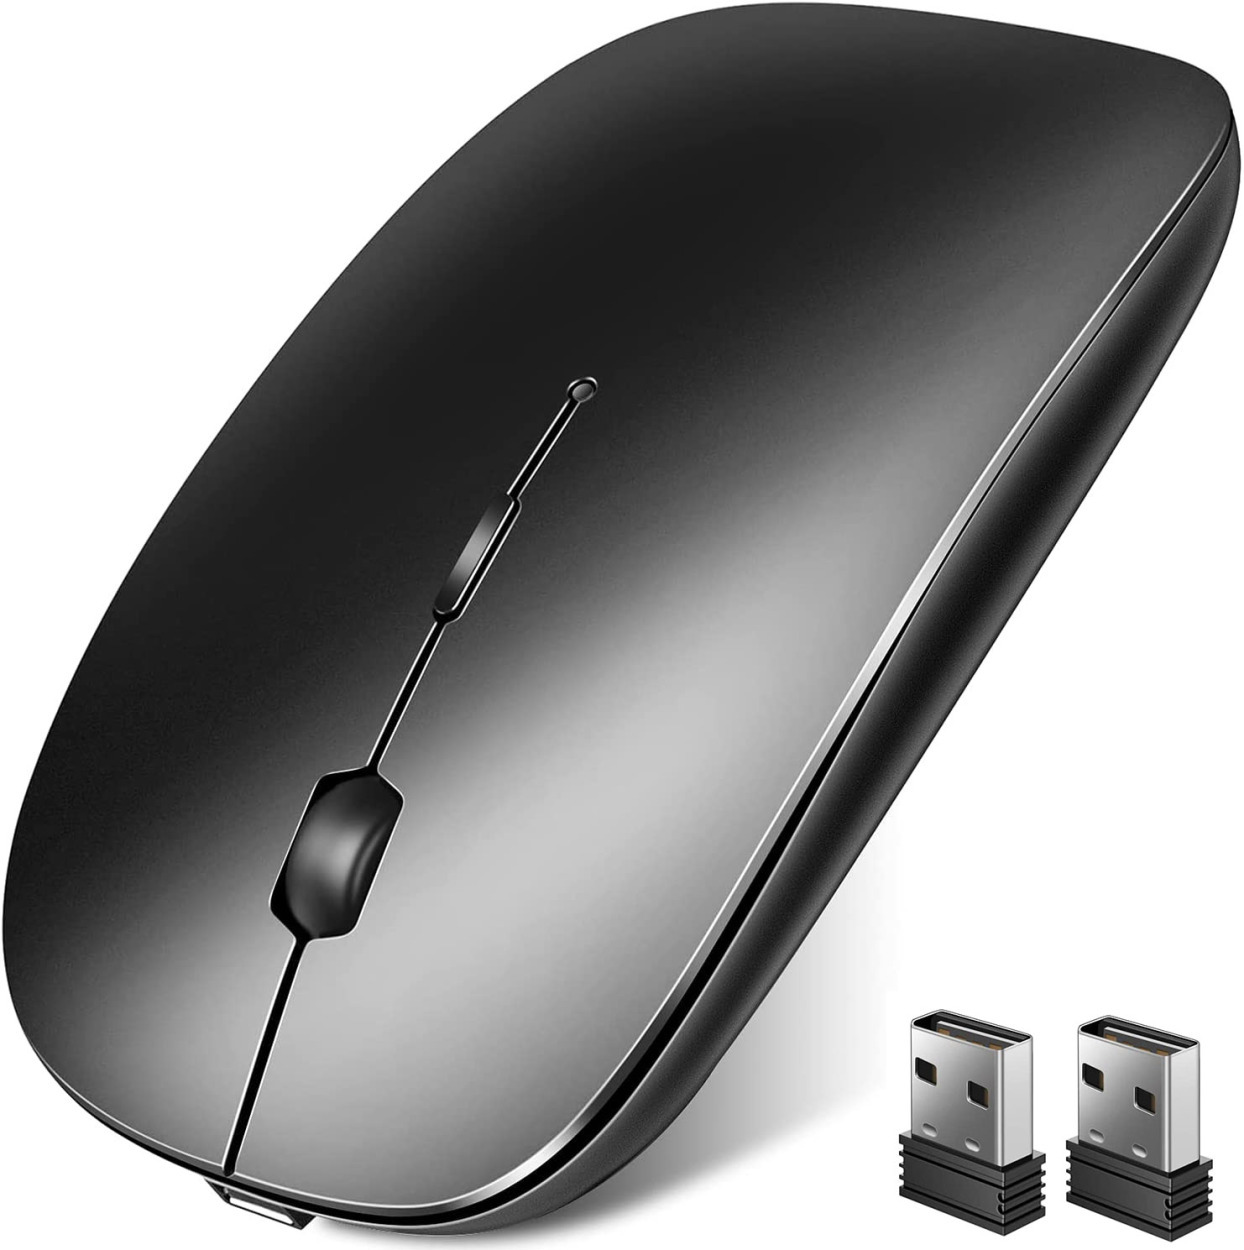 マウス 完全ワイヤレス機能 ワイヤレスマウス Bluetoothマウス Bluetooth5.1 光...